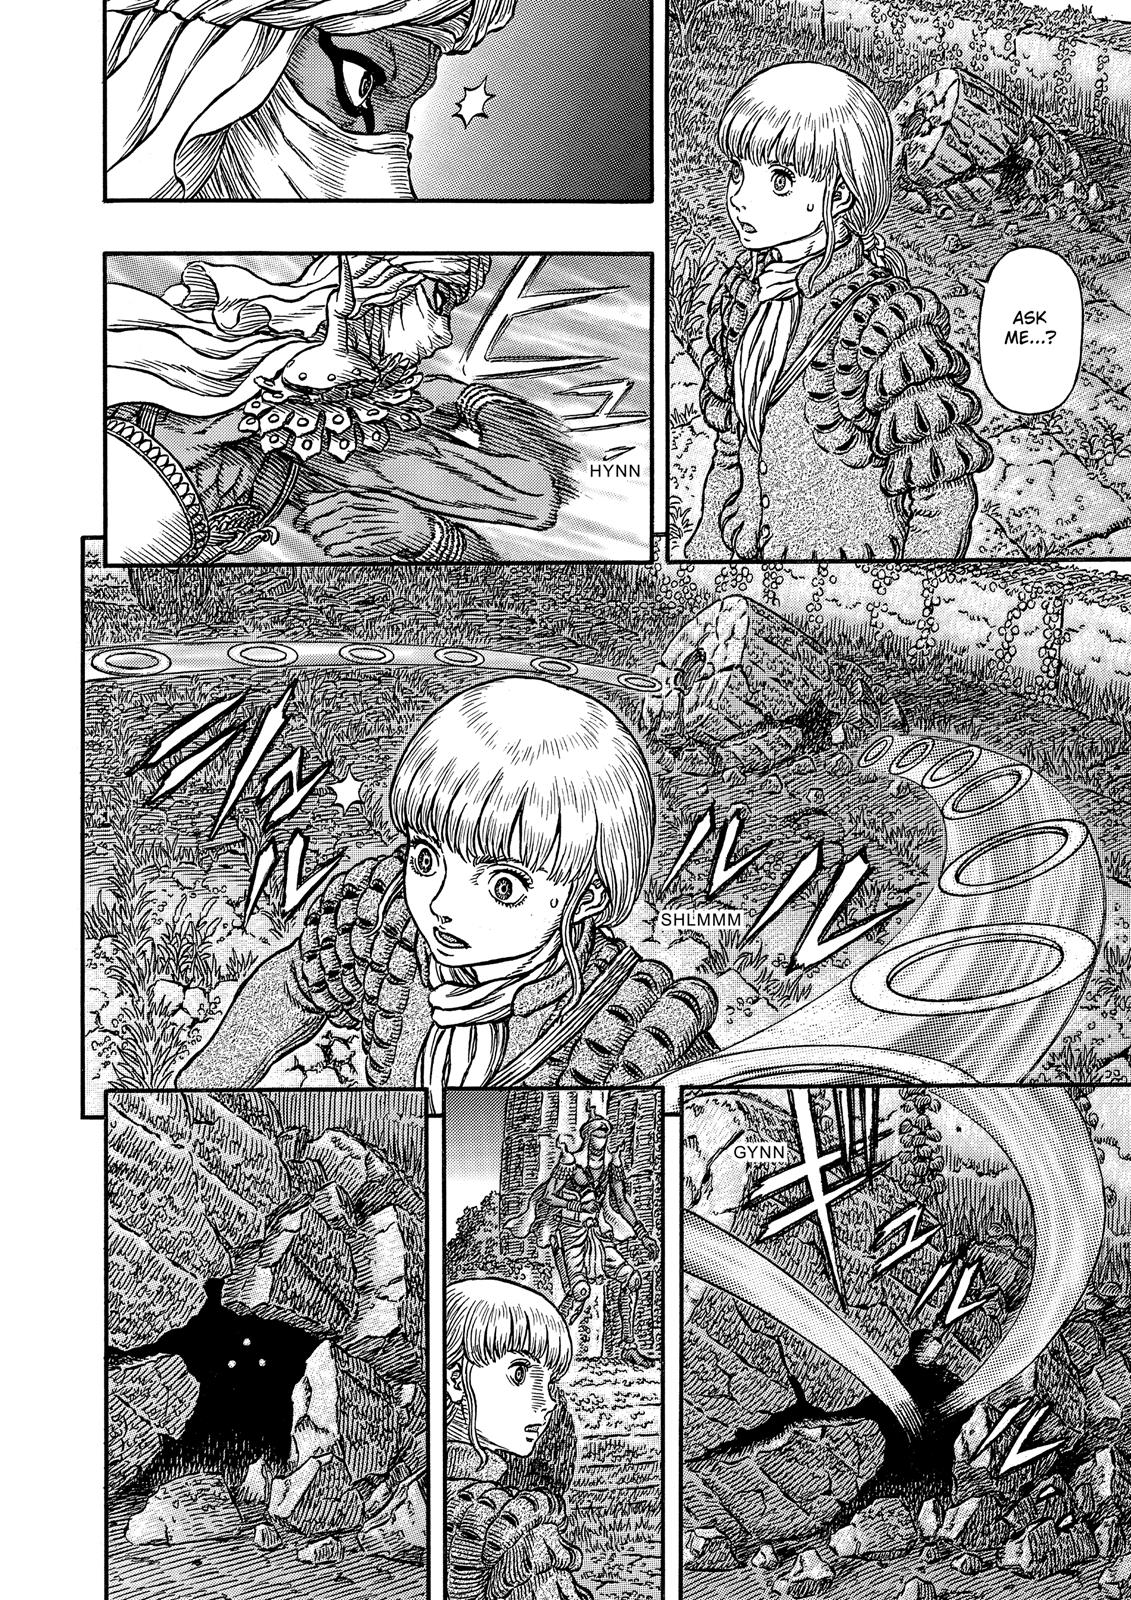 Berserk Manga Chapter 339 image 03